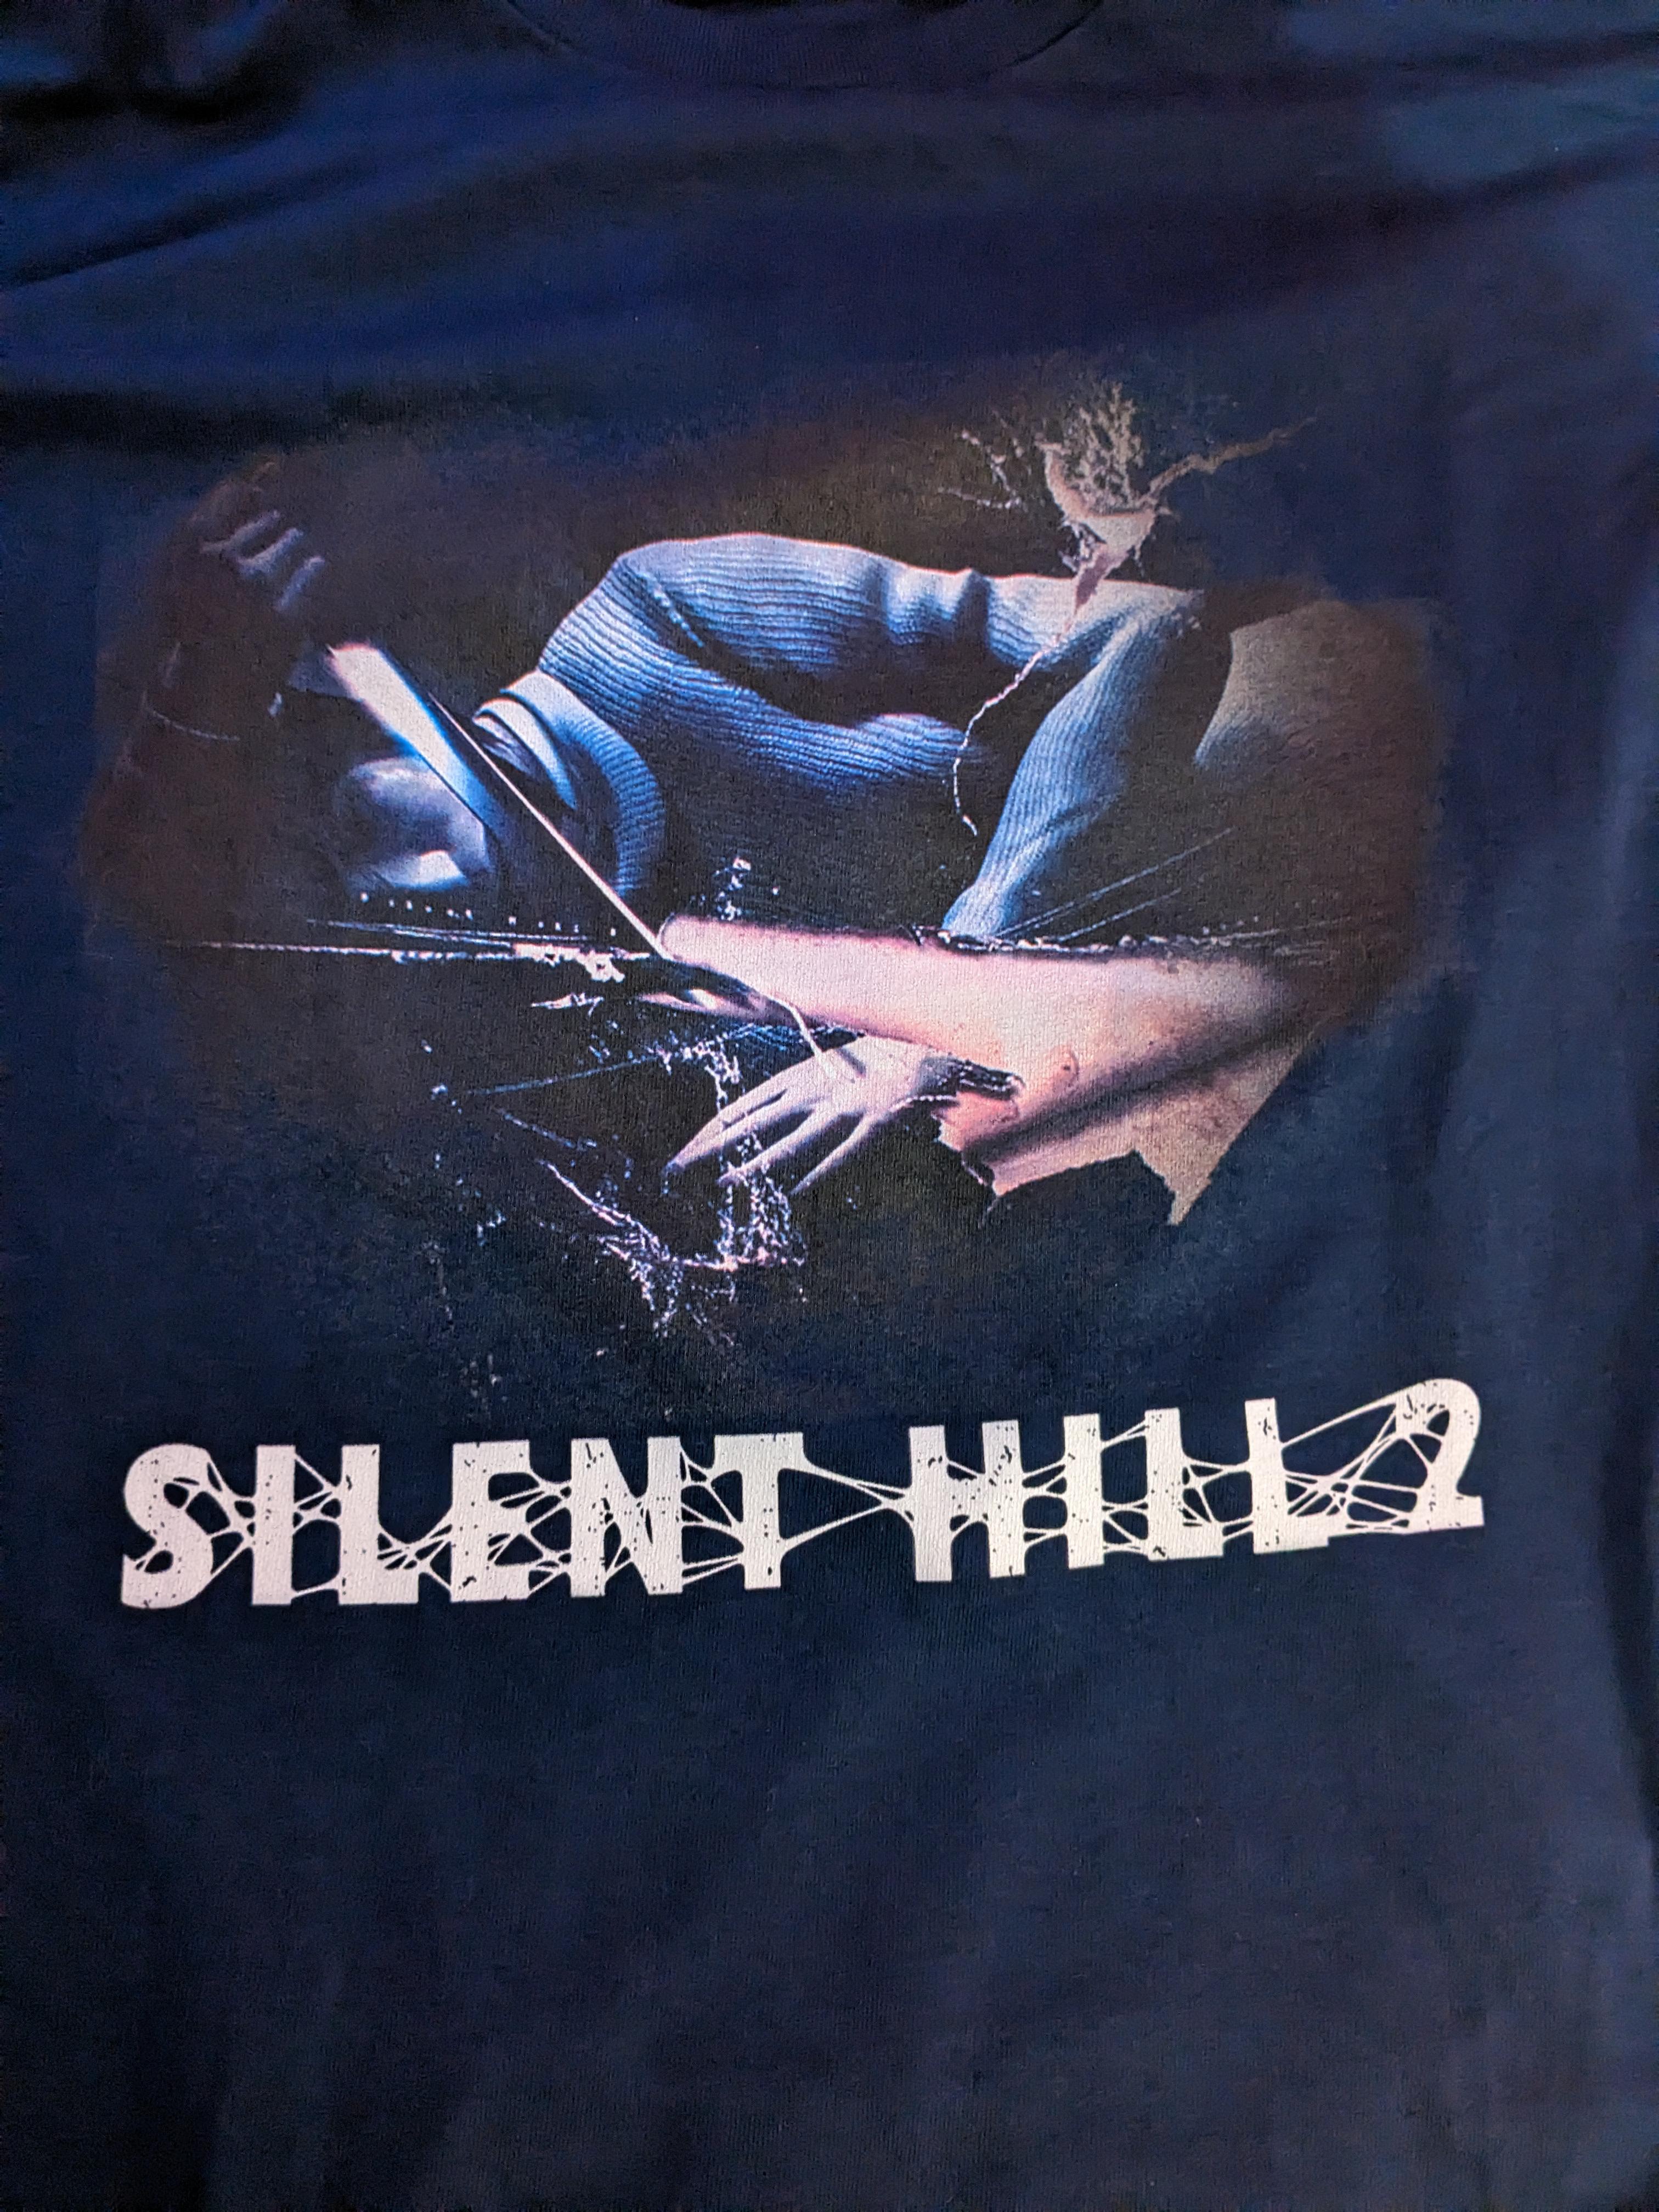 silent hill shirt